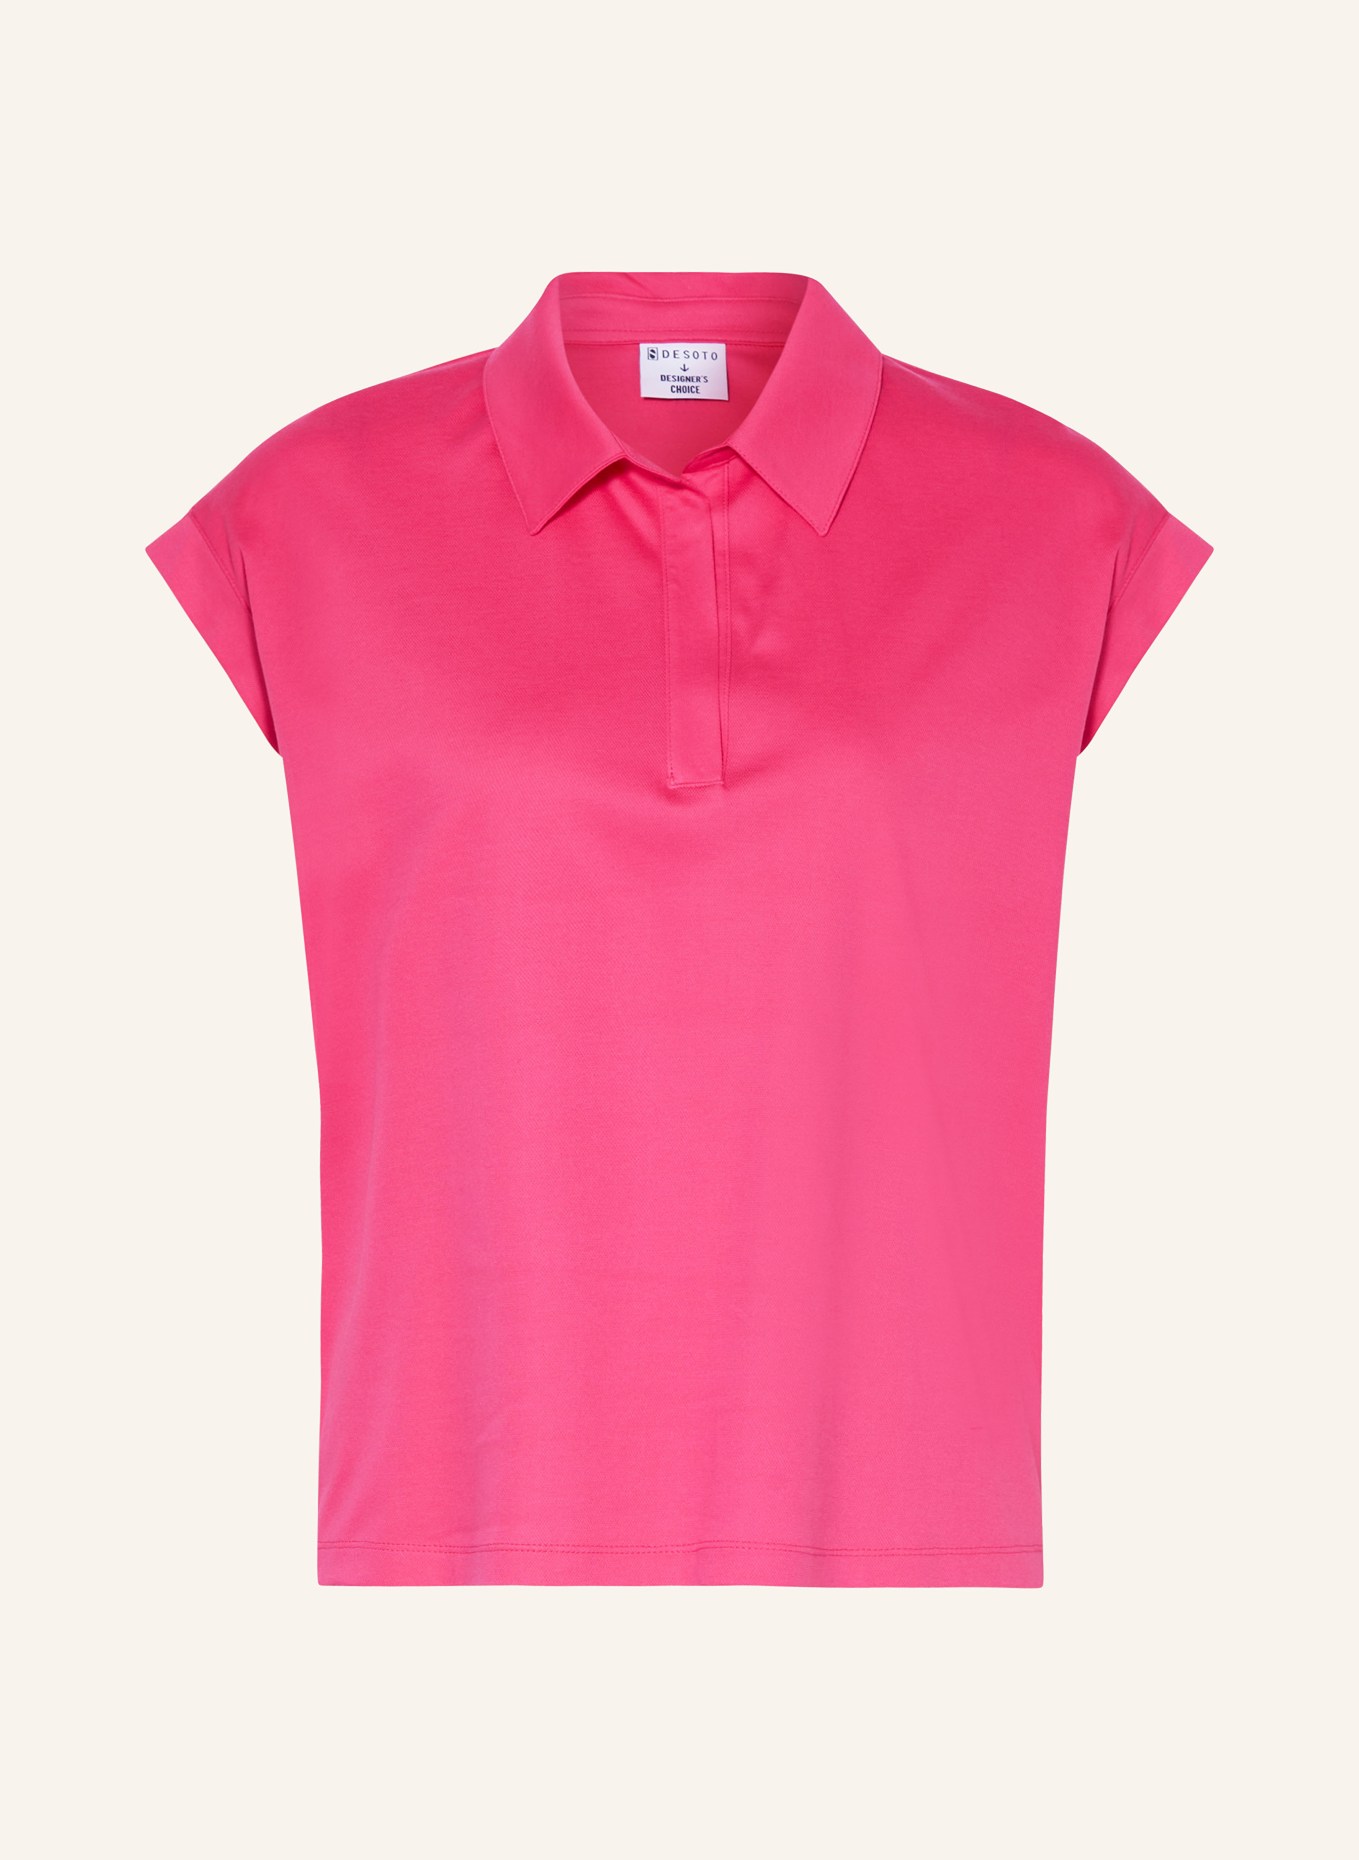 DESOTO Piqué-Poloshirt, Farbe: PINK (Bild 1)